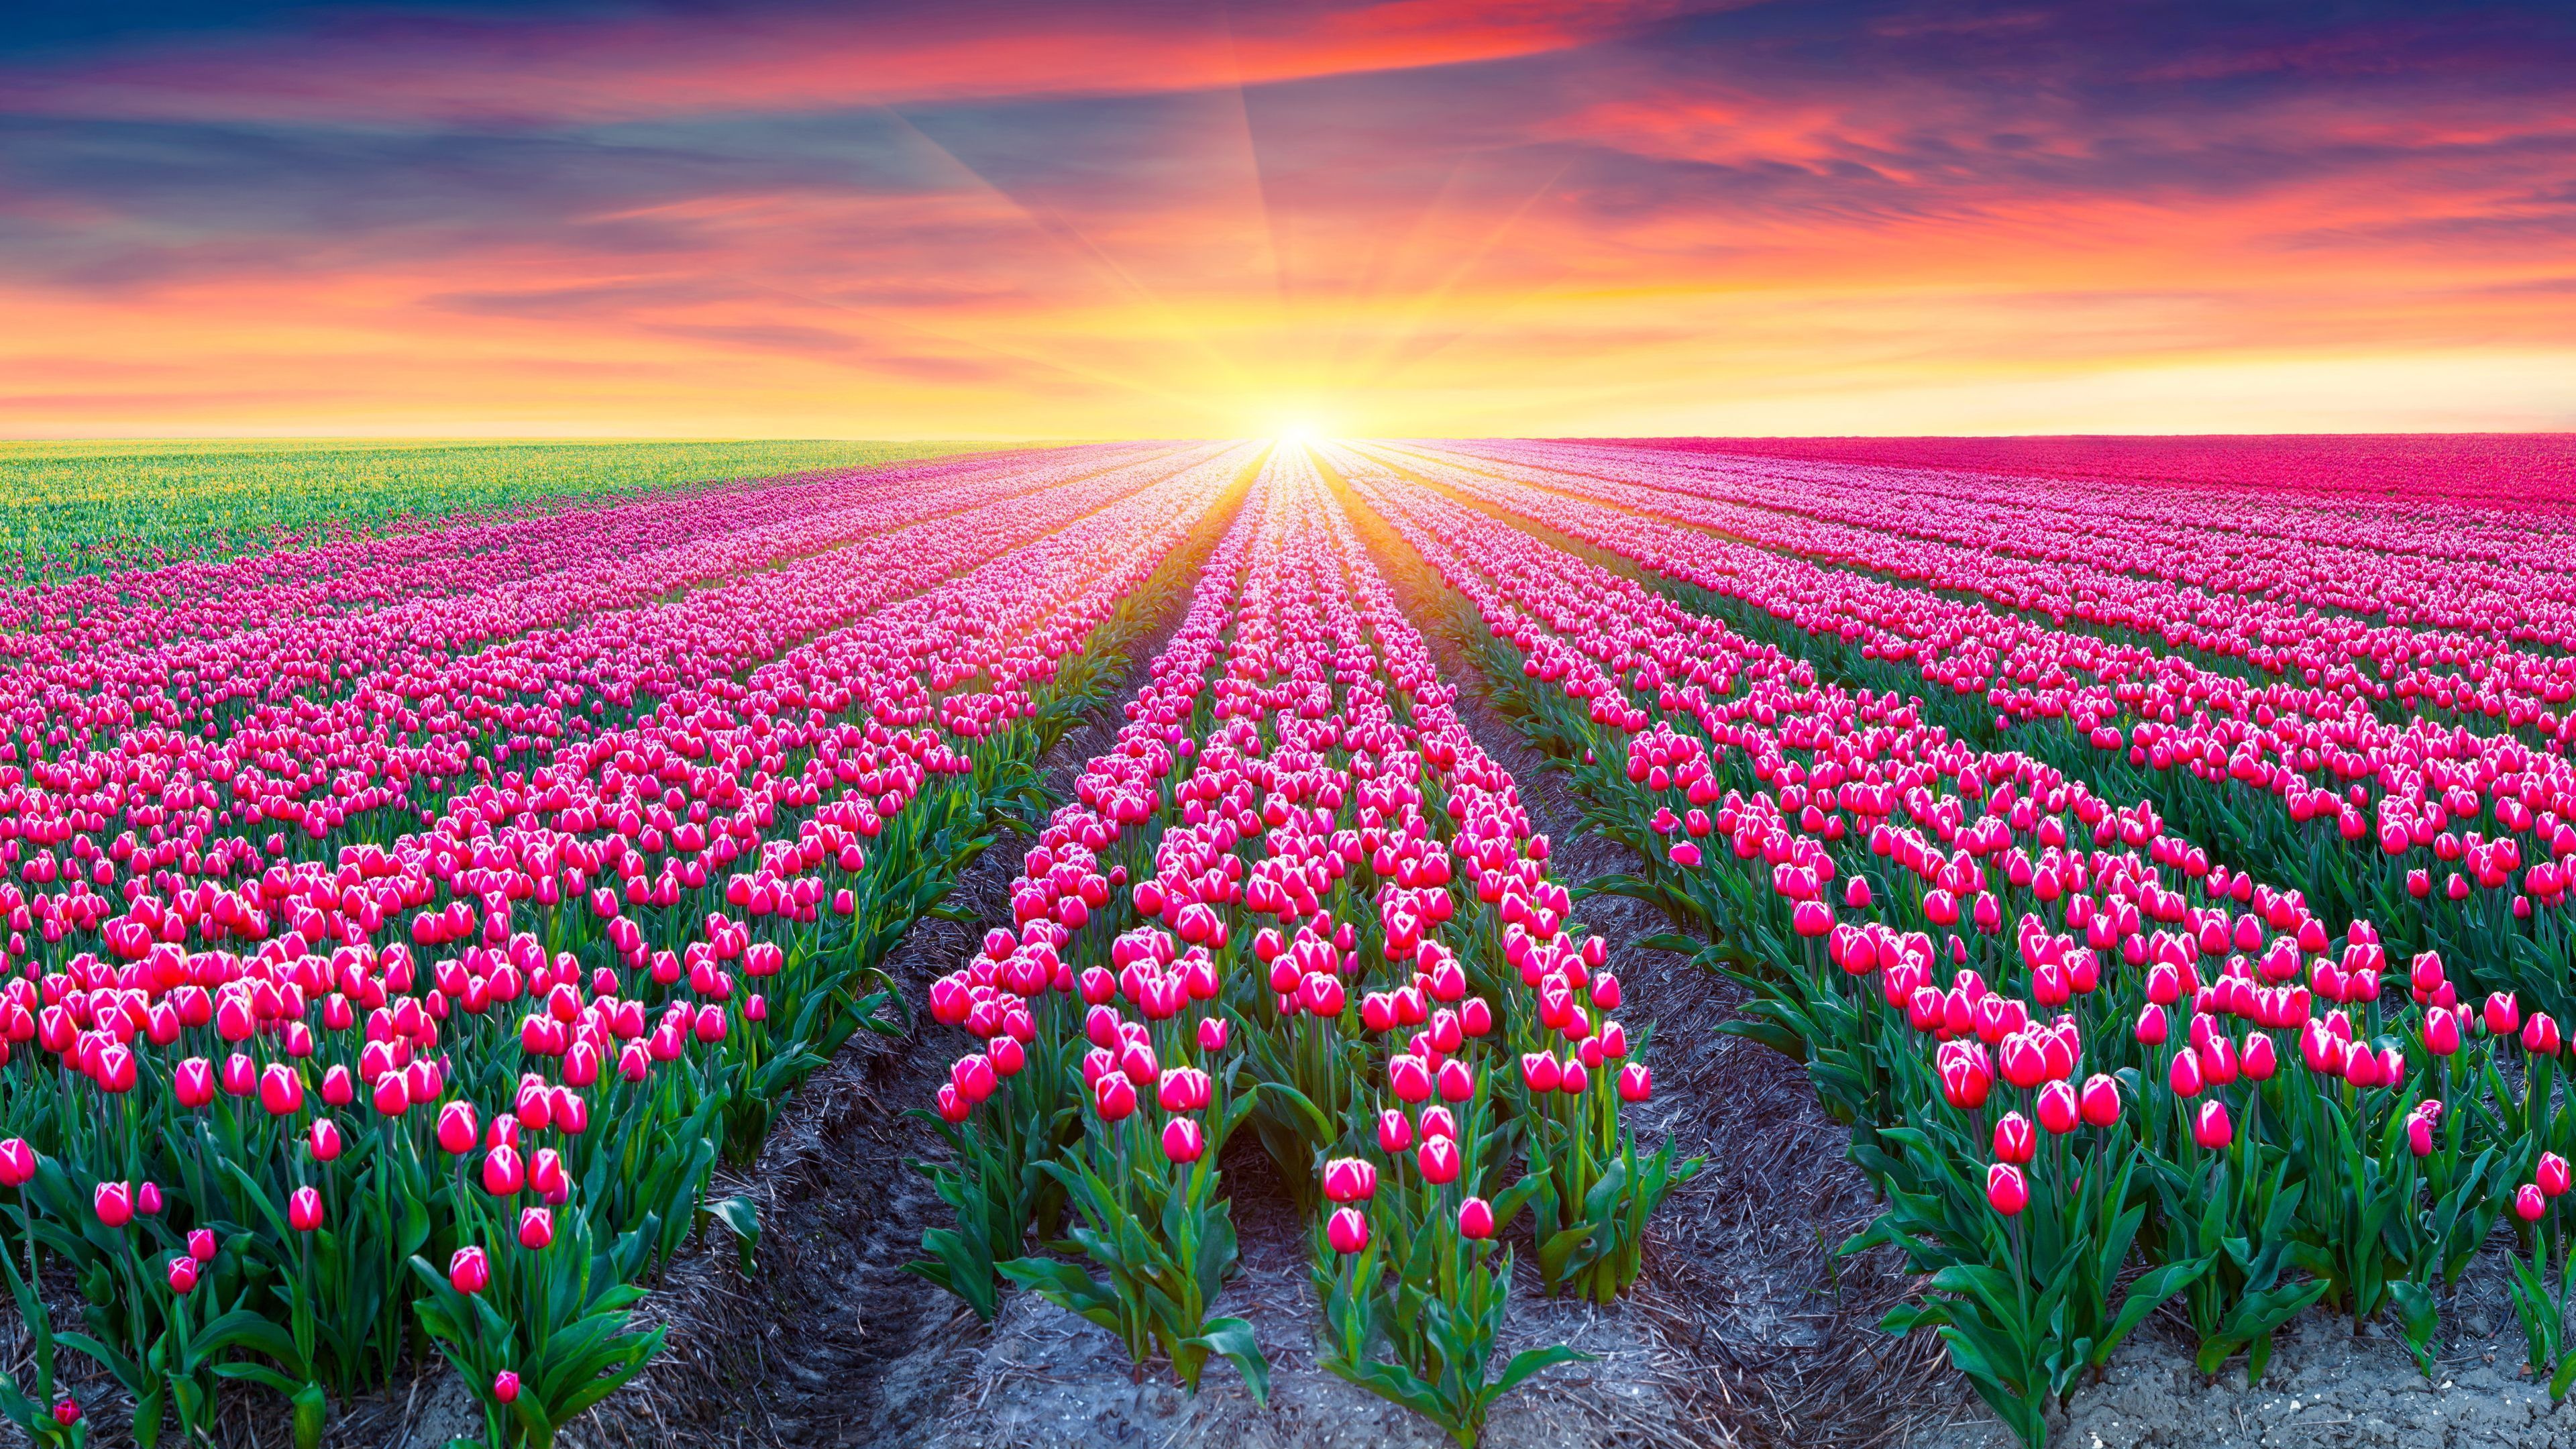 Tulip Fields Of Beautiful Flowers Wallpaper HD Free Download. Field wallpaper, Flower field, Pink flowers wallpaper